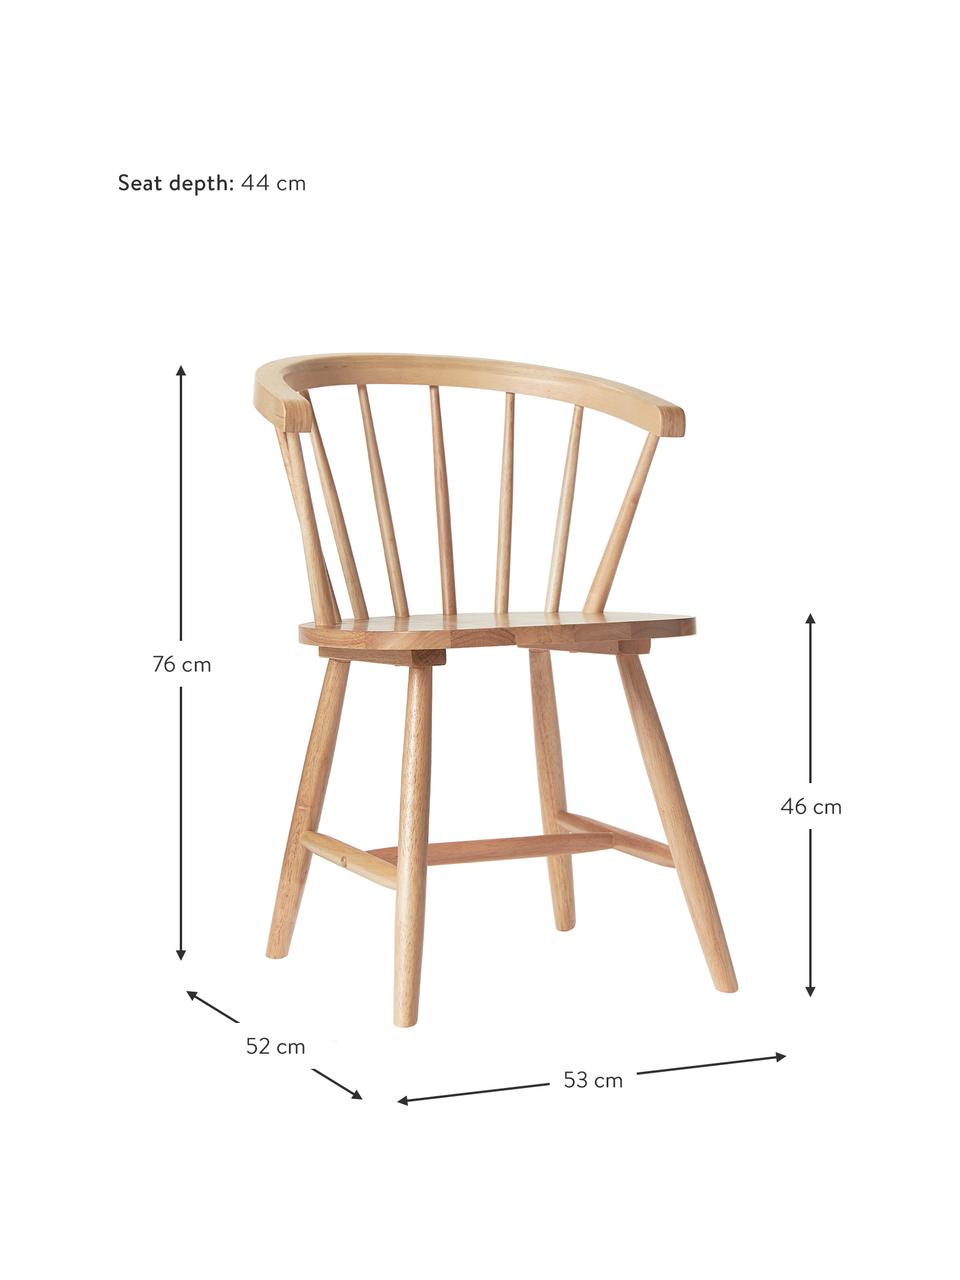 Windsor-Holzstühle Megan, 2 Stück, Kautschukholz, lackiert, Helles Holz, B 53 x T 52 cm